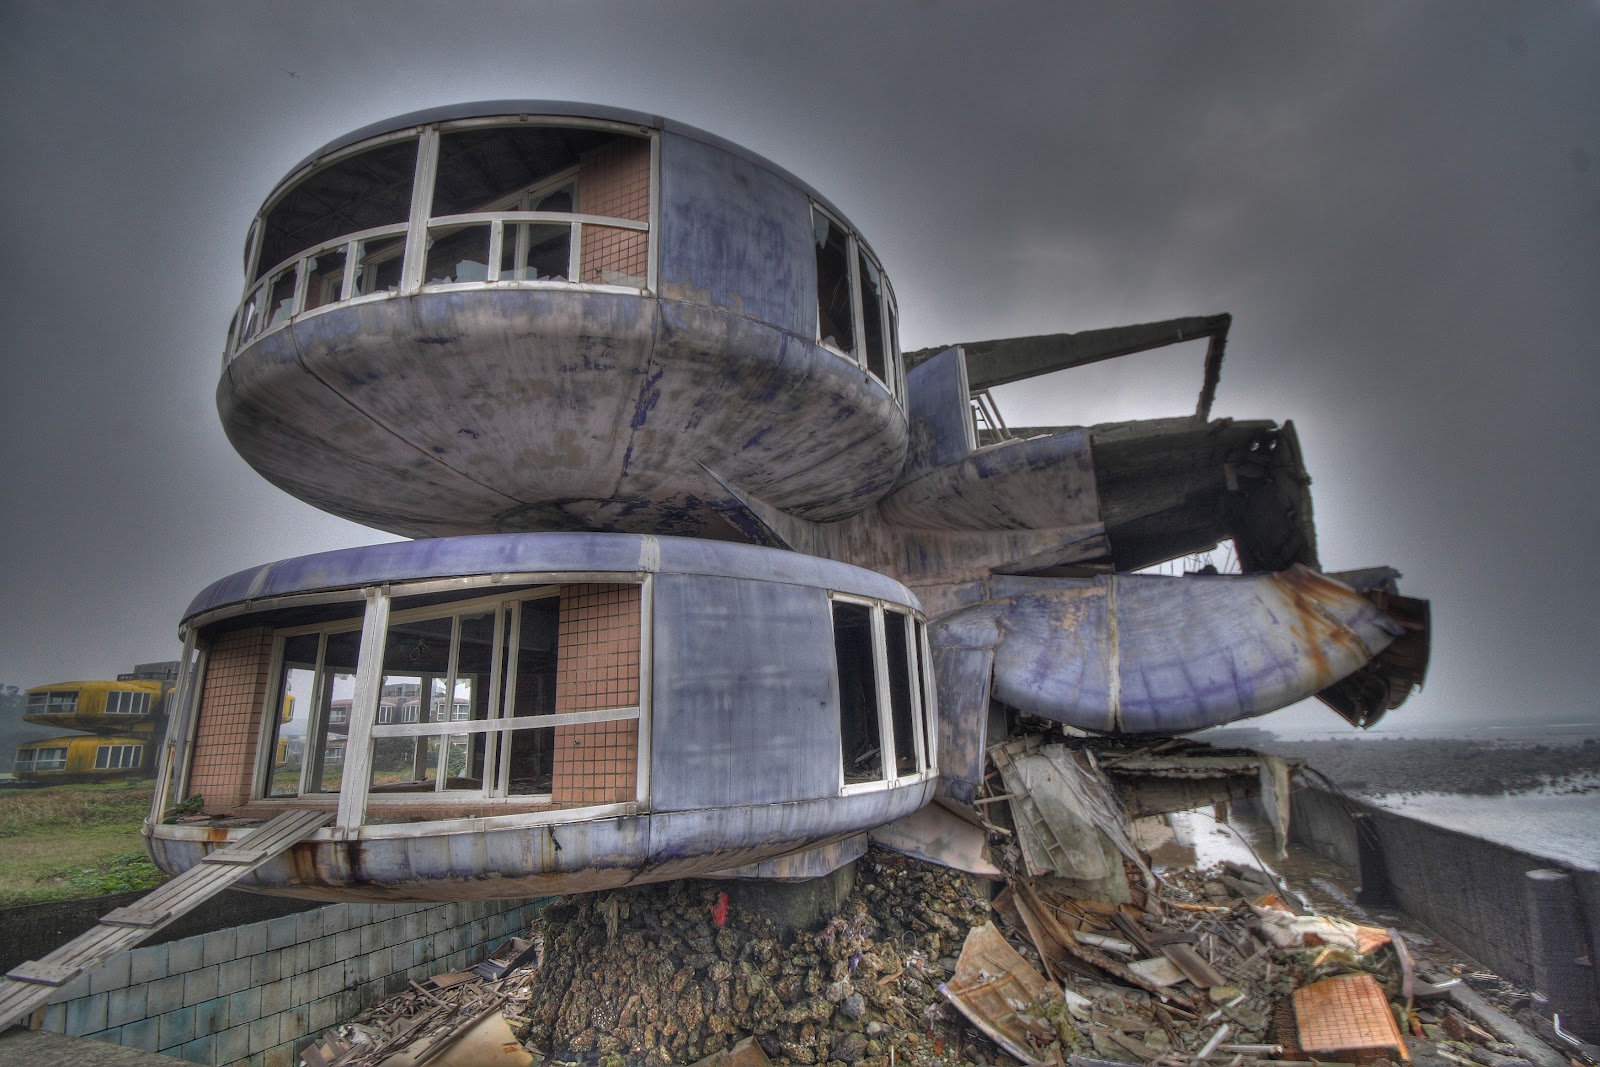 Ve vzhledu takzvaných UFO domů se odráží někdejší představa architektů o bydlení budoucnosti.